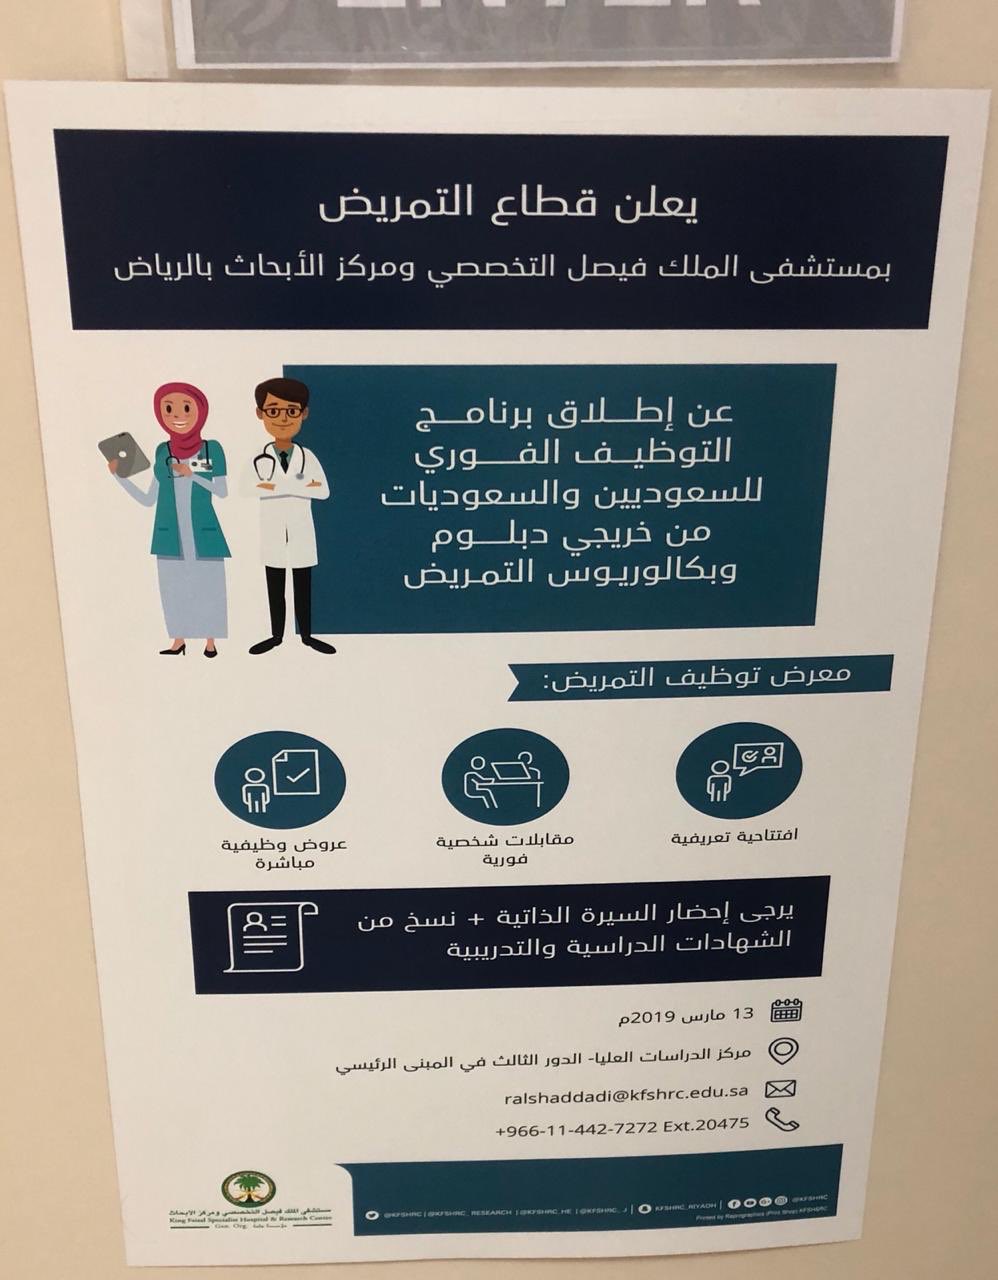 رواتب التمريض في السعودية